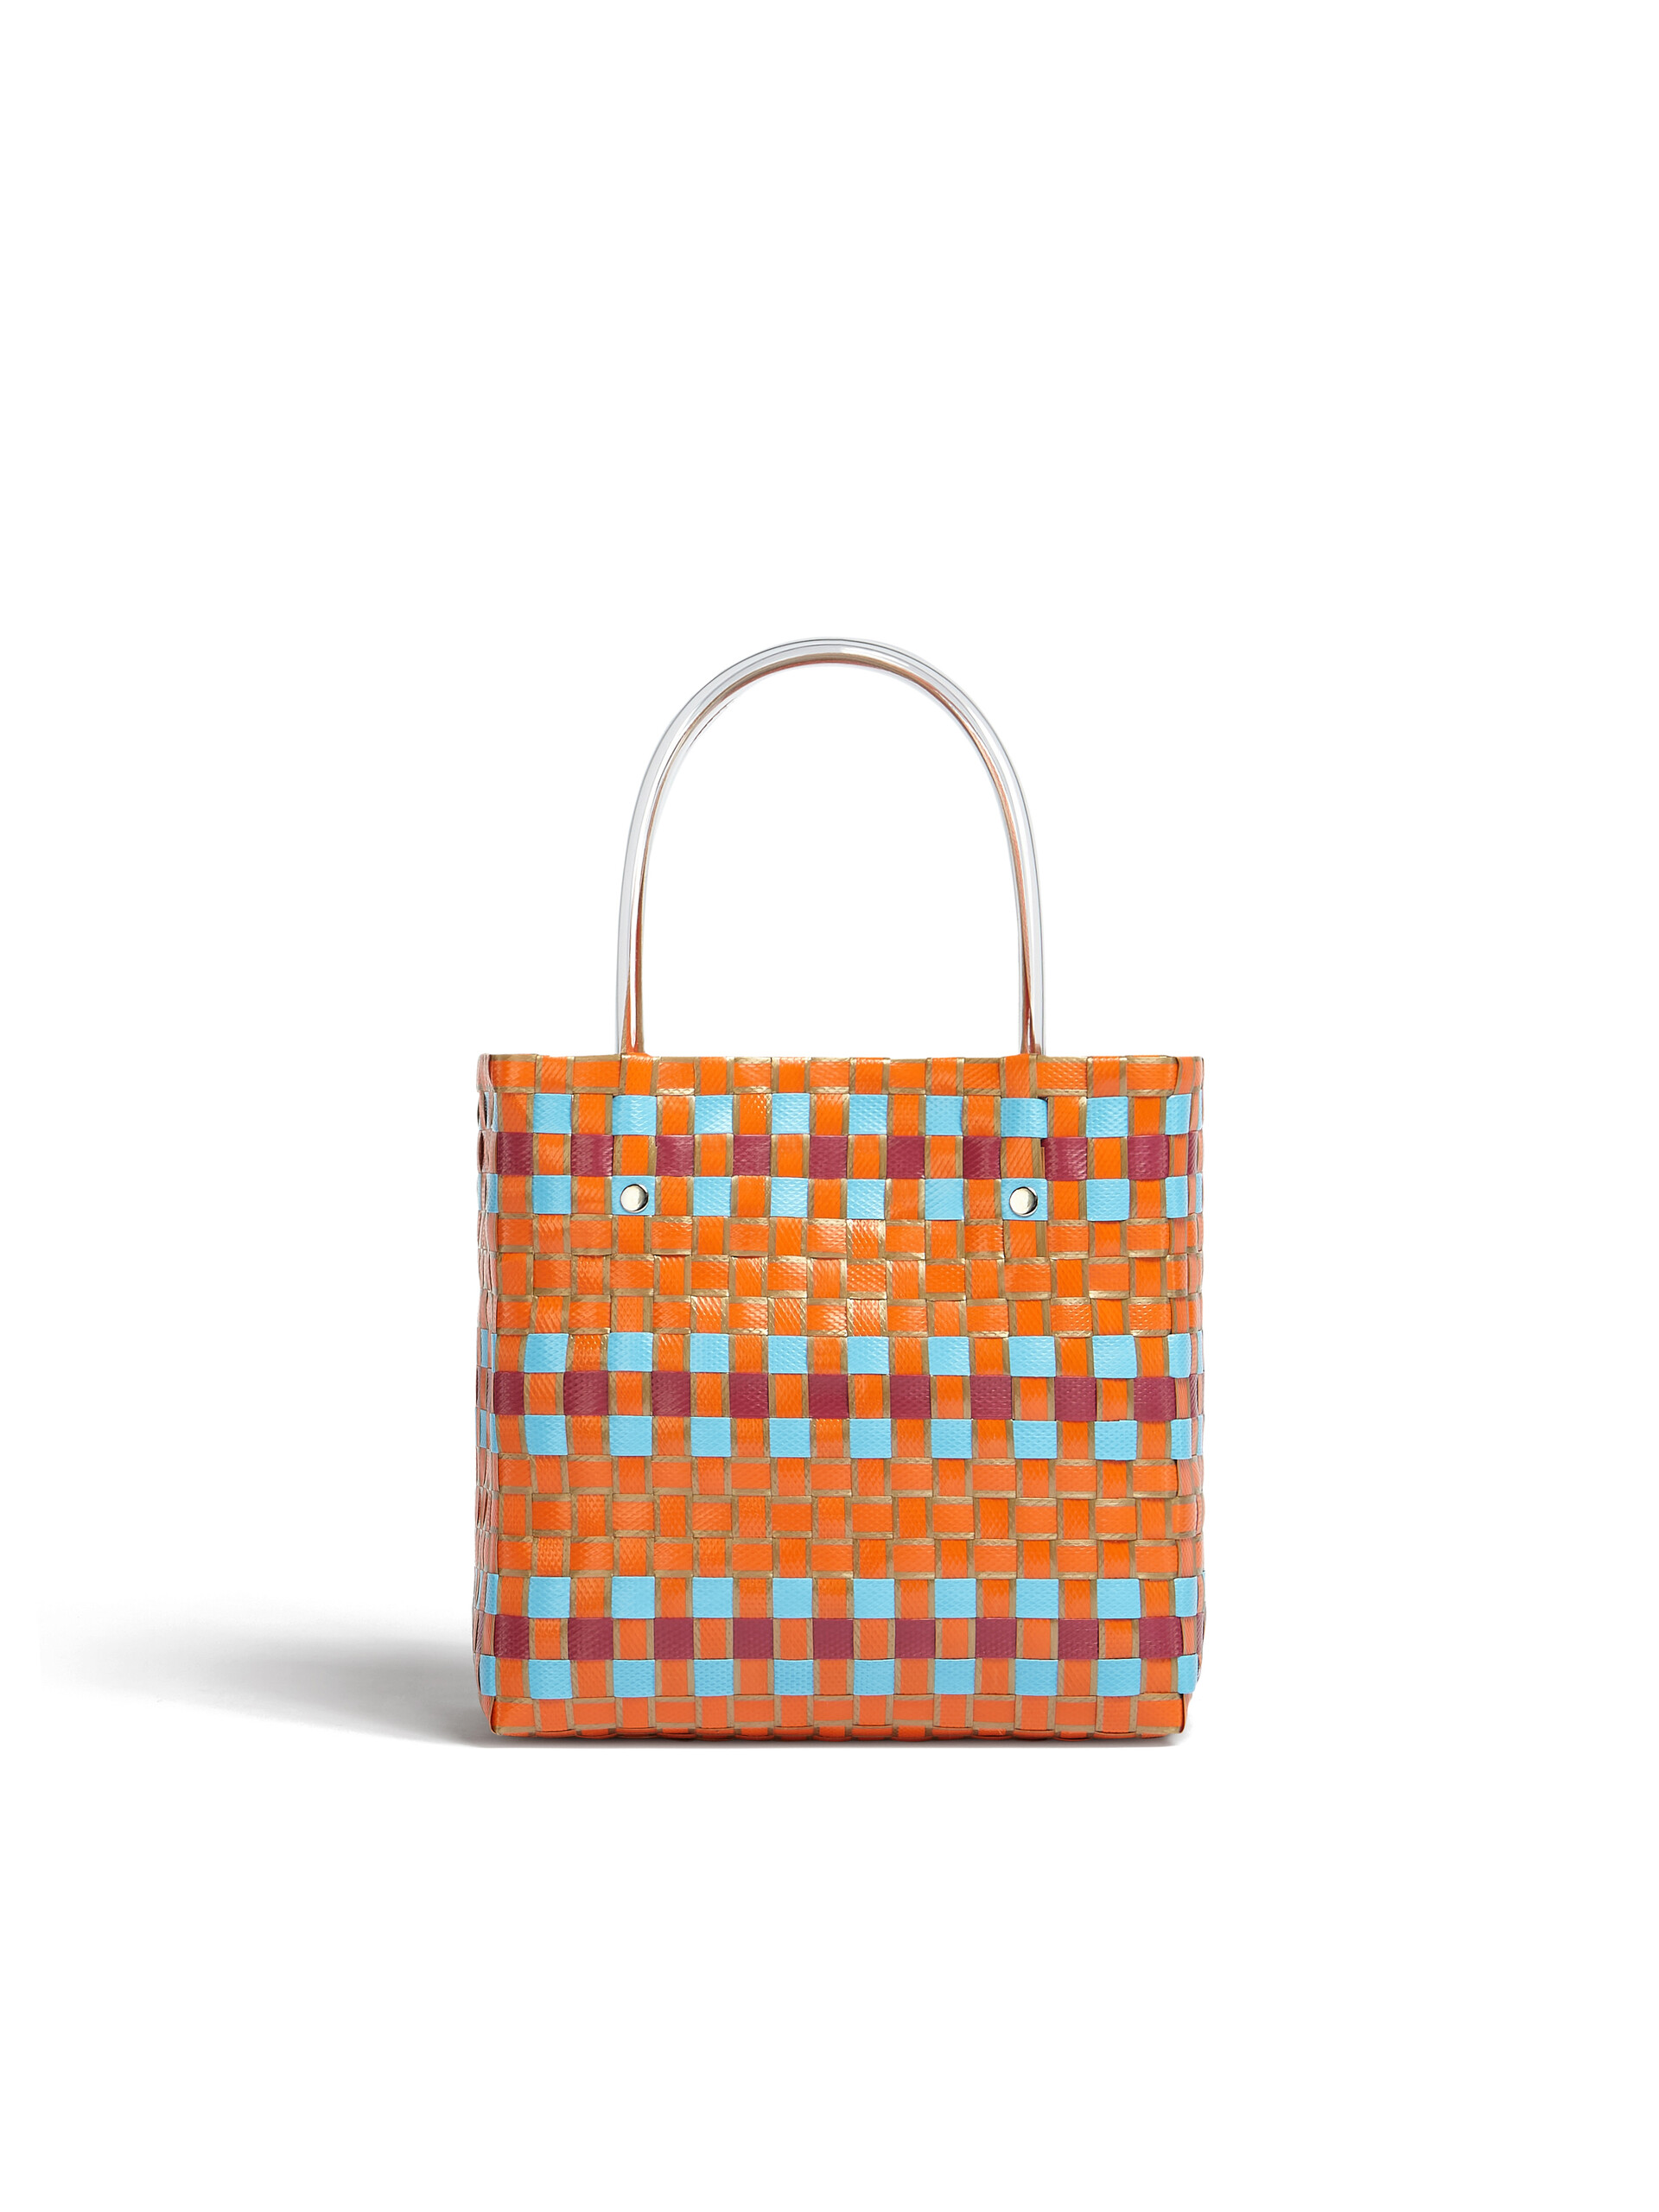 MARNI MARKET shopping bag in orange polypropylene - Bags - Image 3